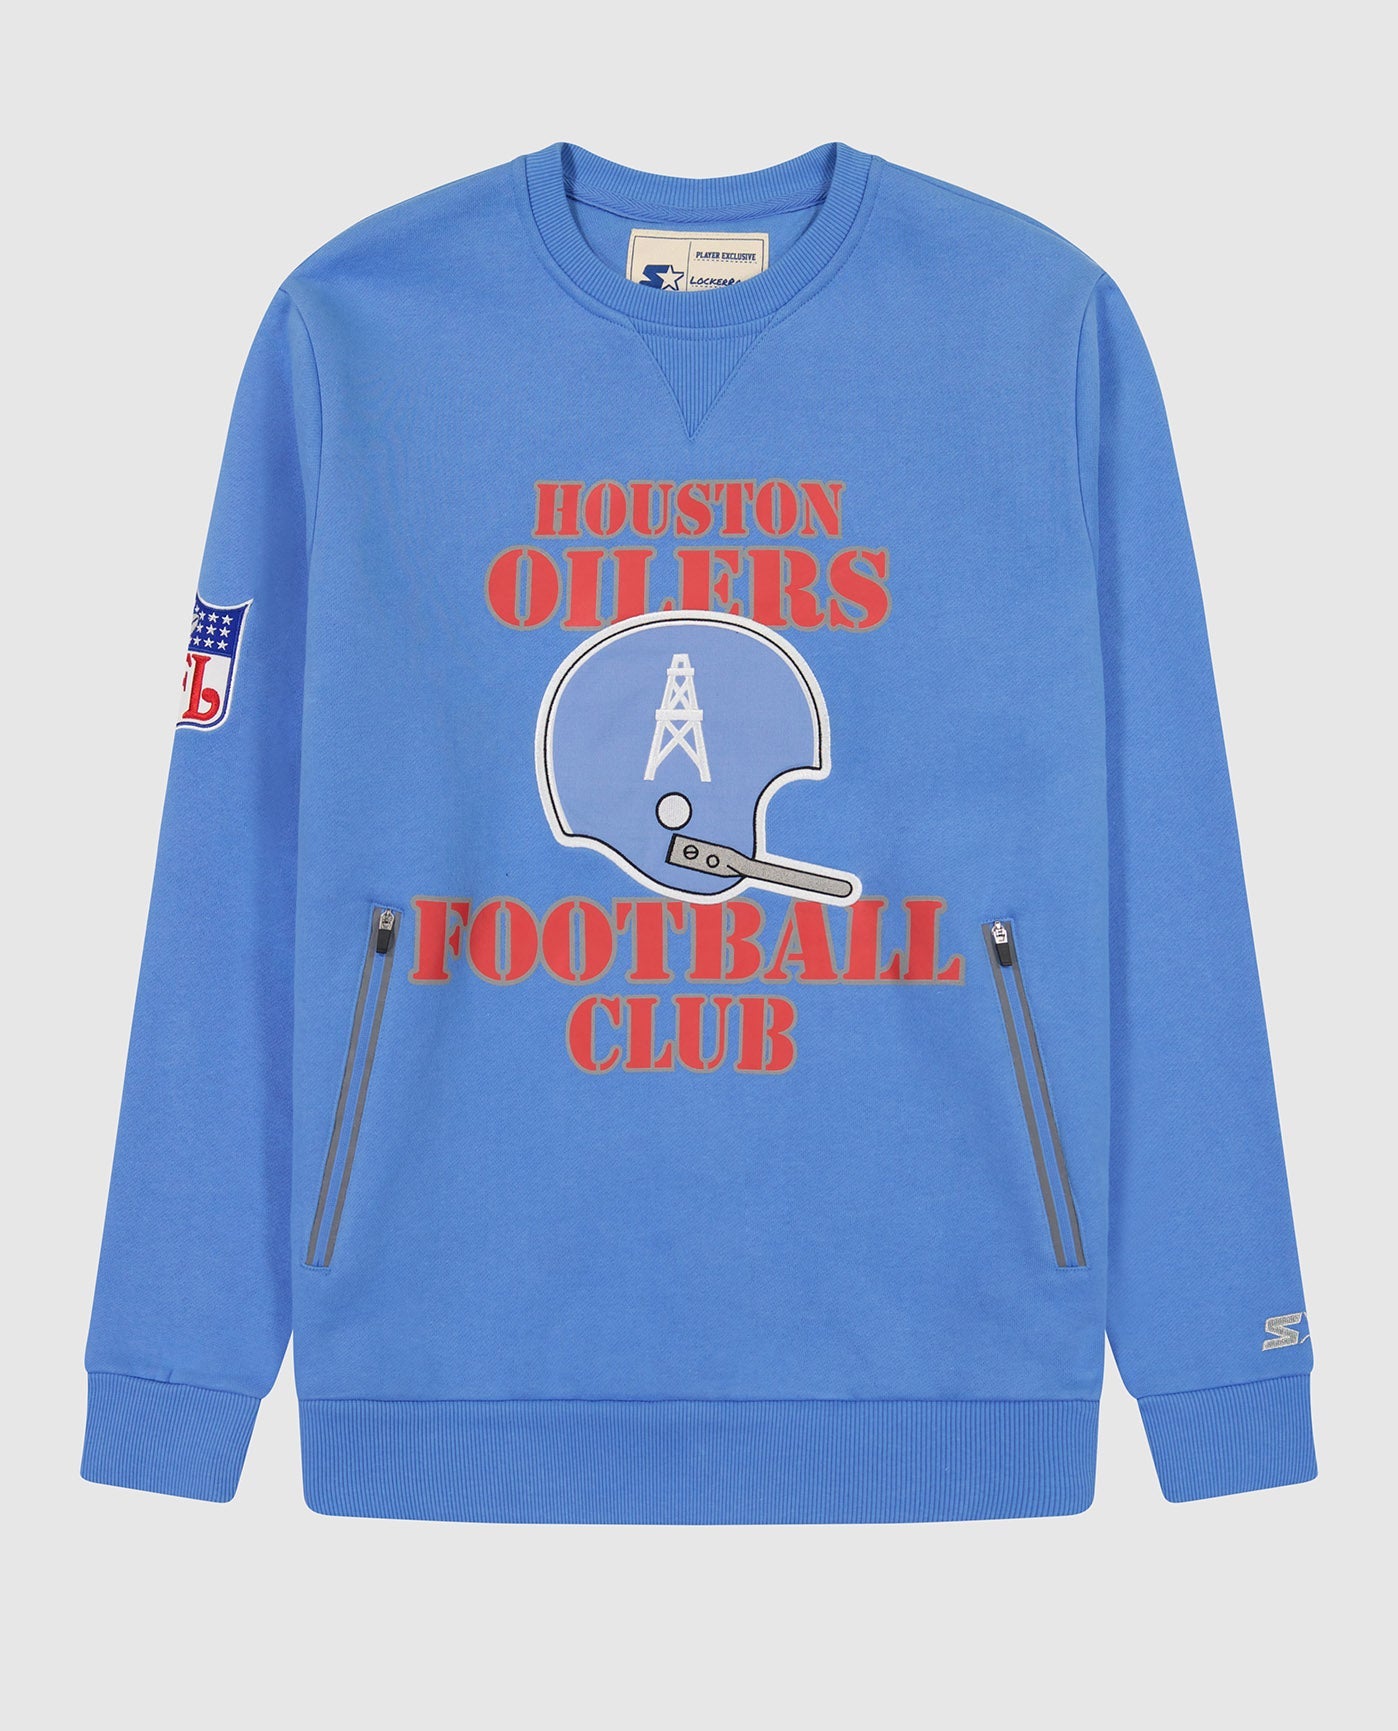 Oilers Vintage Crew Sweatshirt